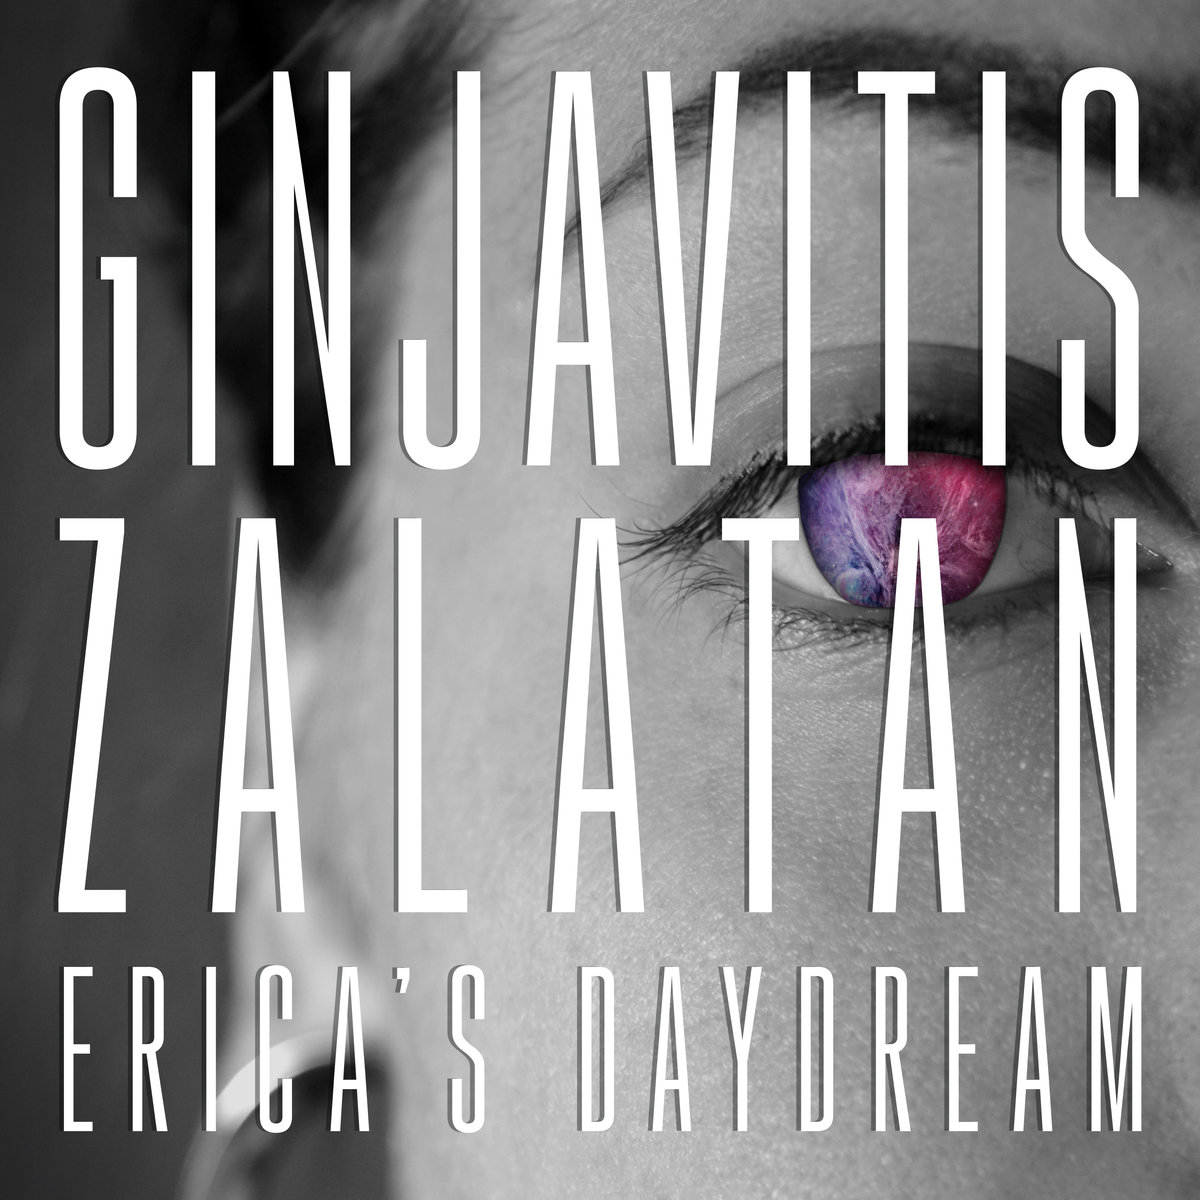 Erica's Daydream